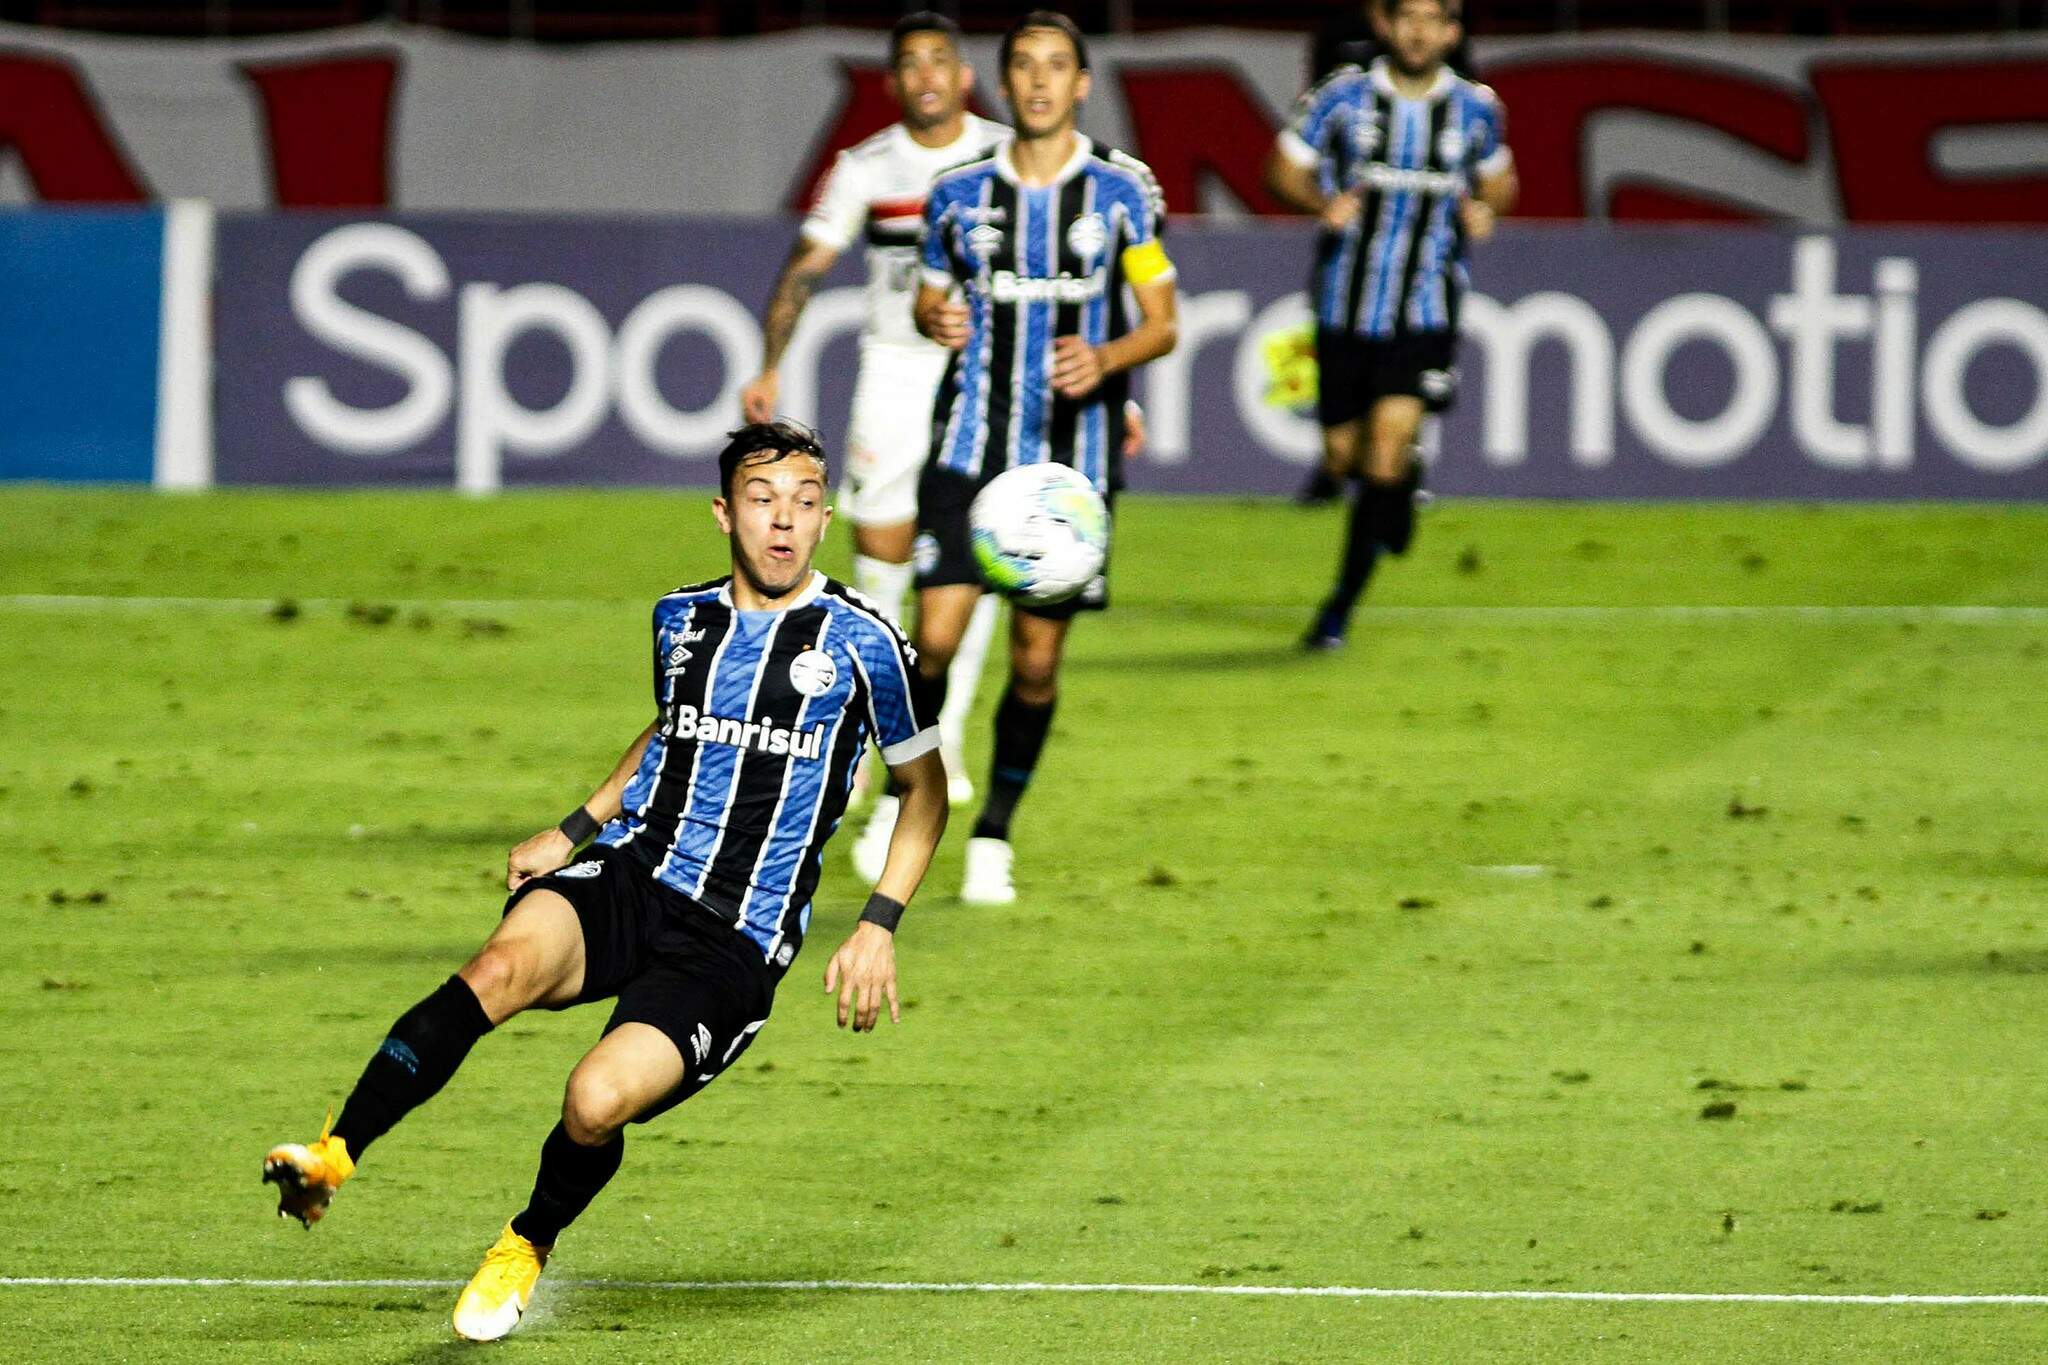 Lance durante partida entre São Paulo e Grêmio, válida pelo Campeonato Brasileiro da Série A, no Estádio do Morumbi, em São Paulo (SP), neste sábado (17). (Foto: Estadão Conteúdo) 